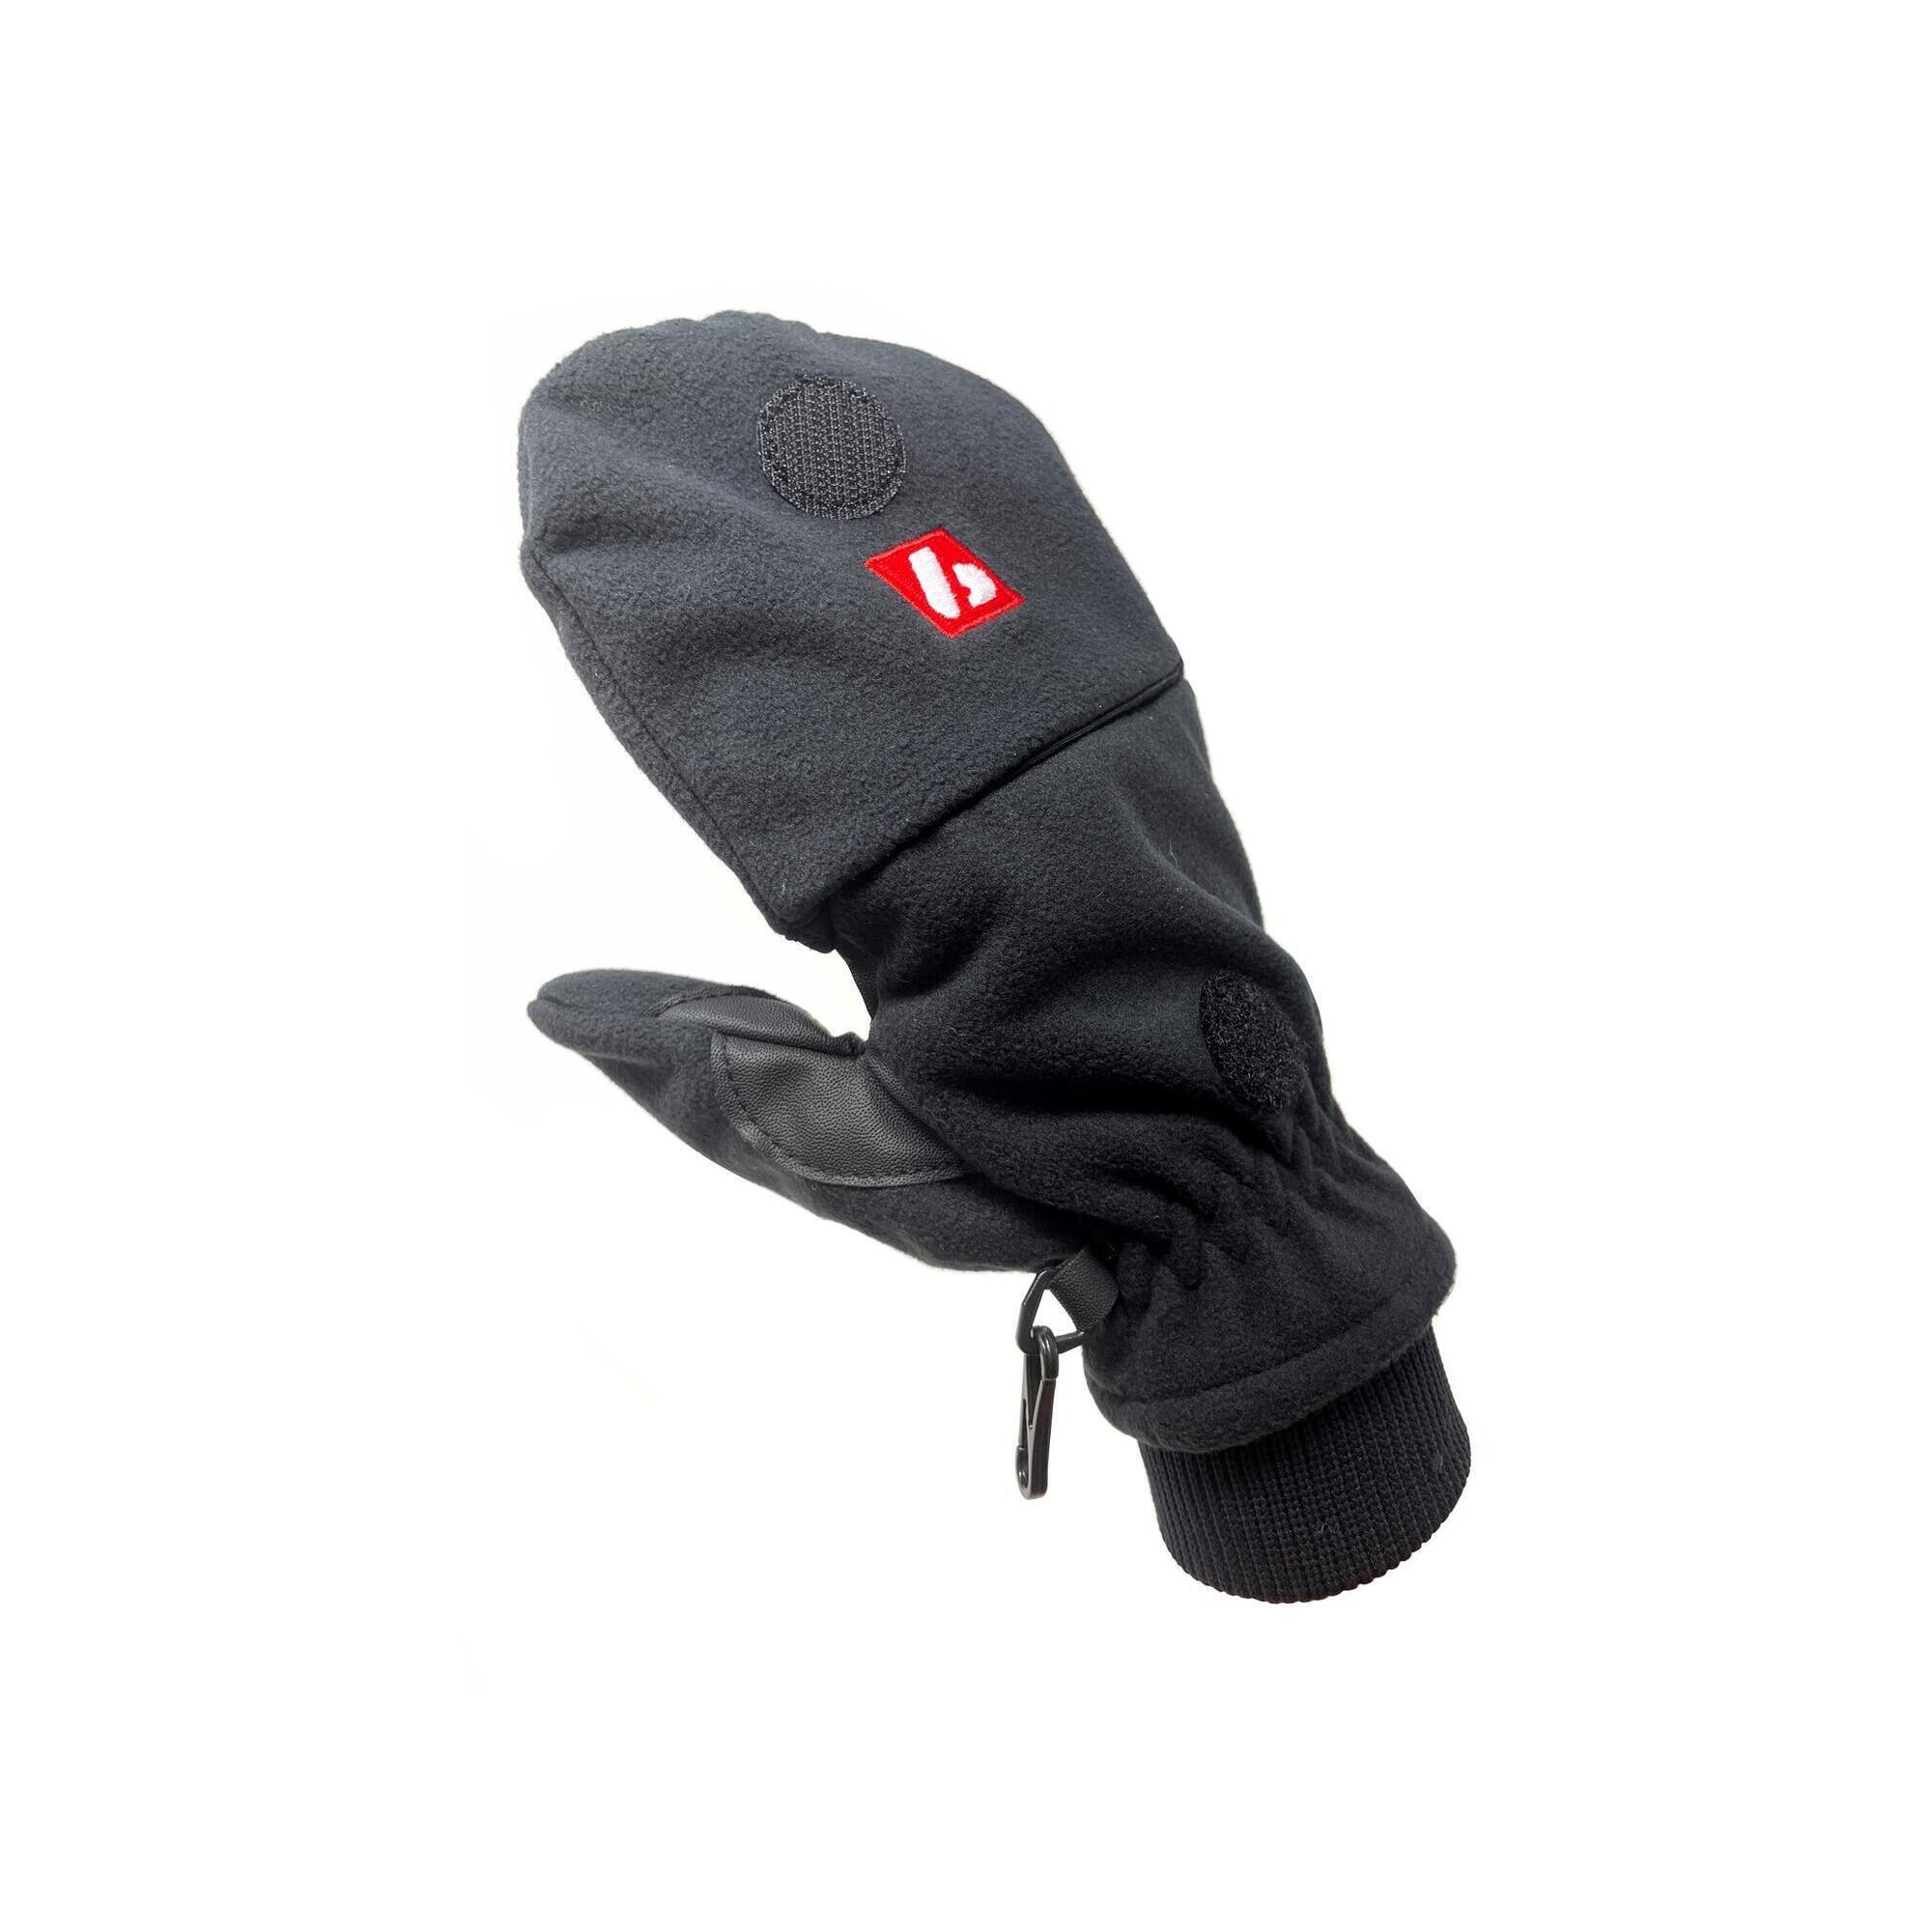  NBG-02 ski gloves 3/5